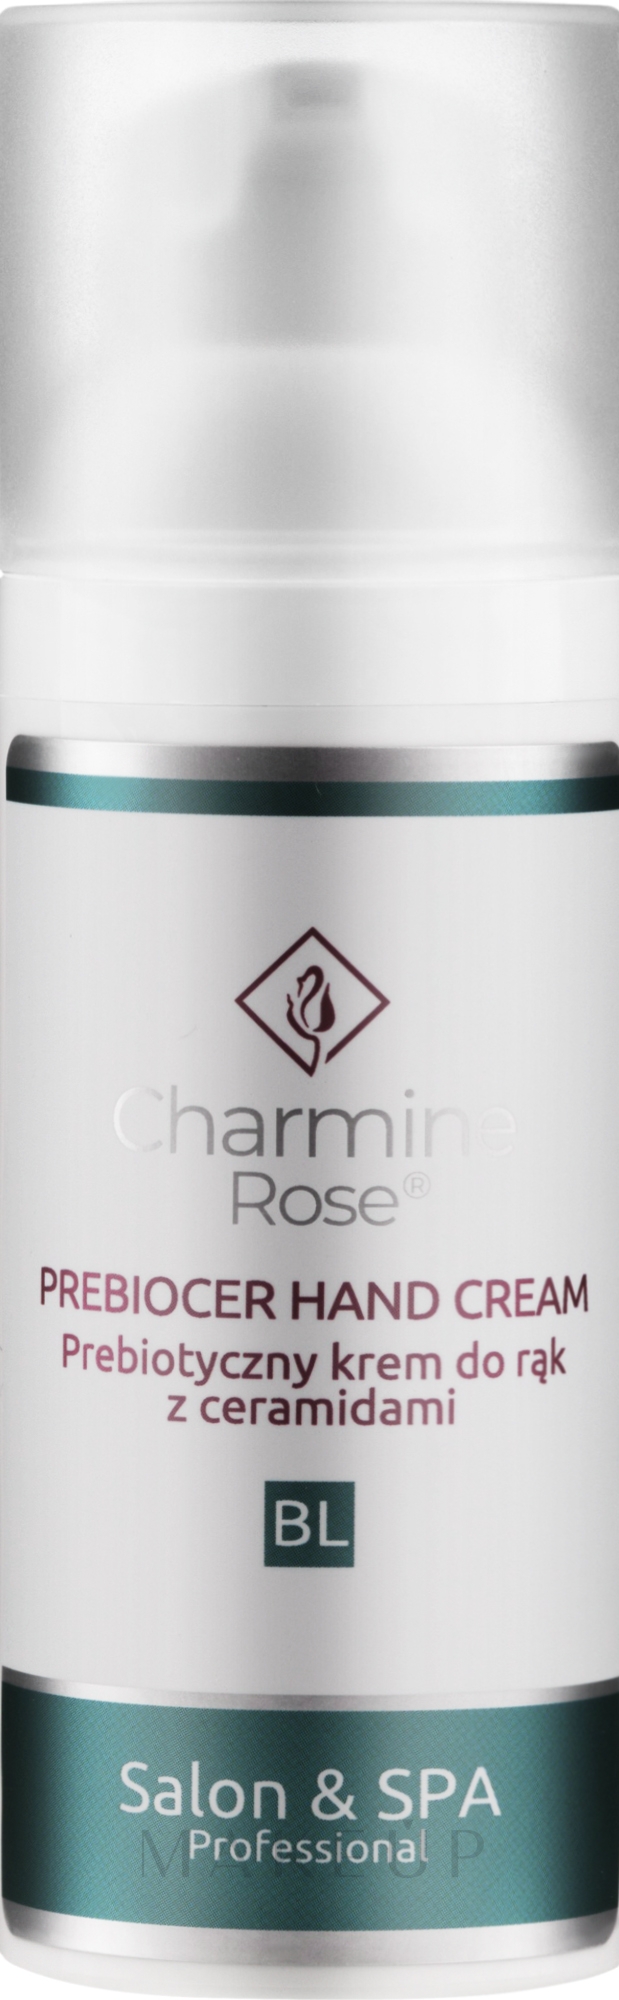 Präbiotische Handcreme mit Ceramiden - Charmine Rose Prebiocer Hand Cream — Bild 50 ml